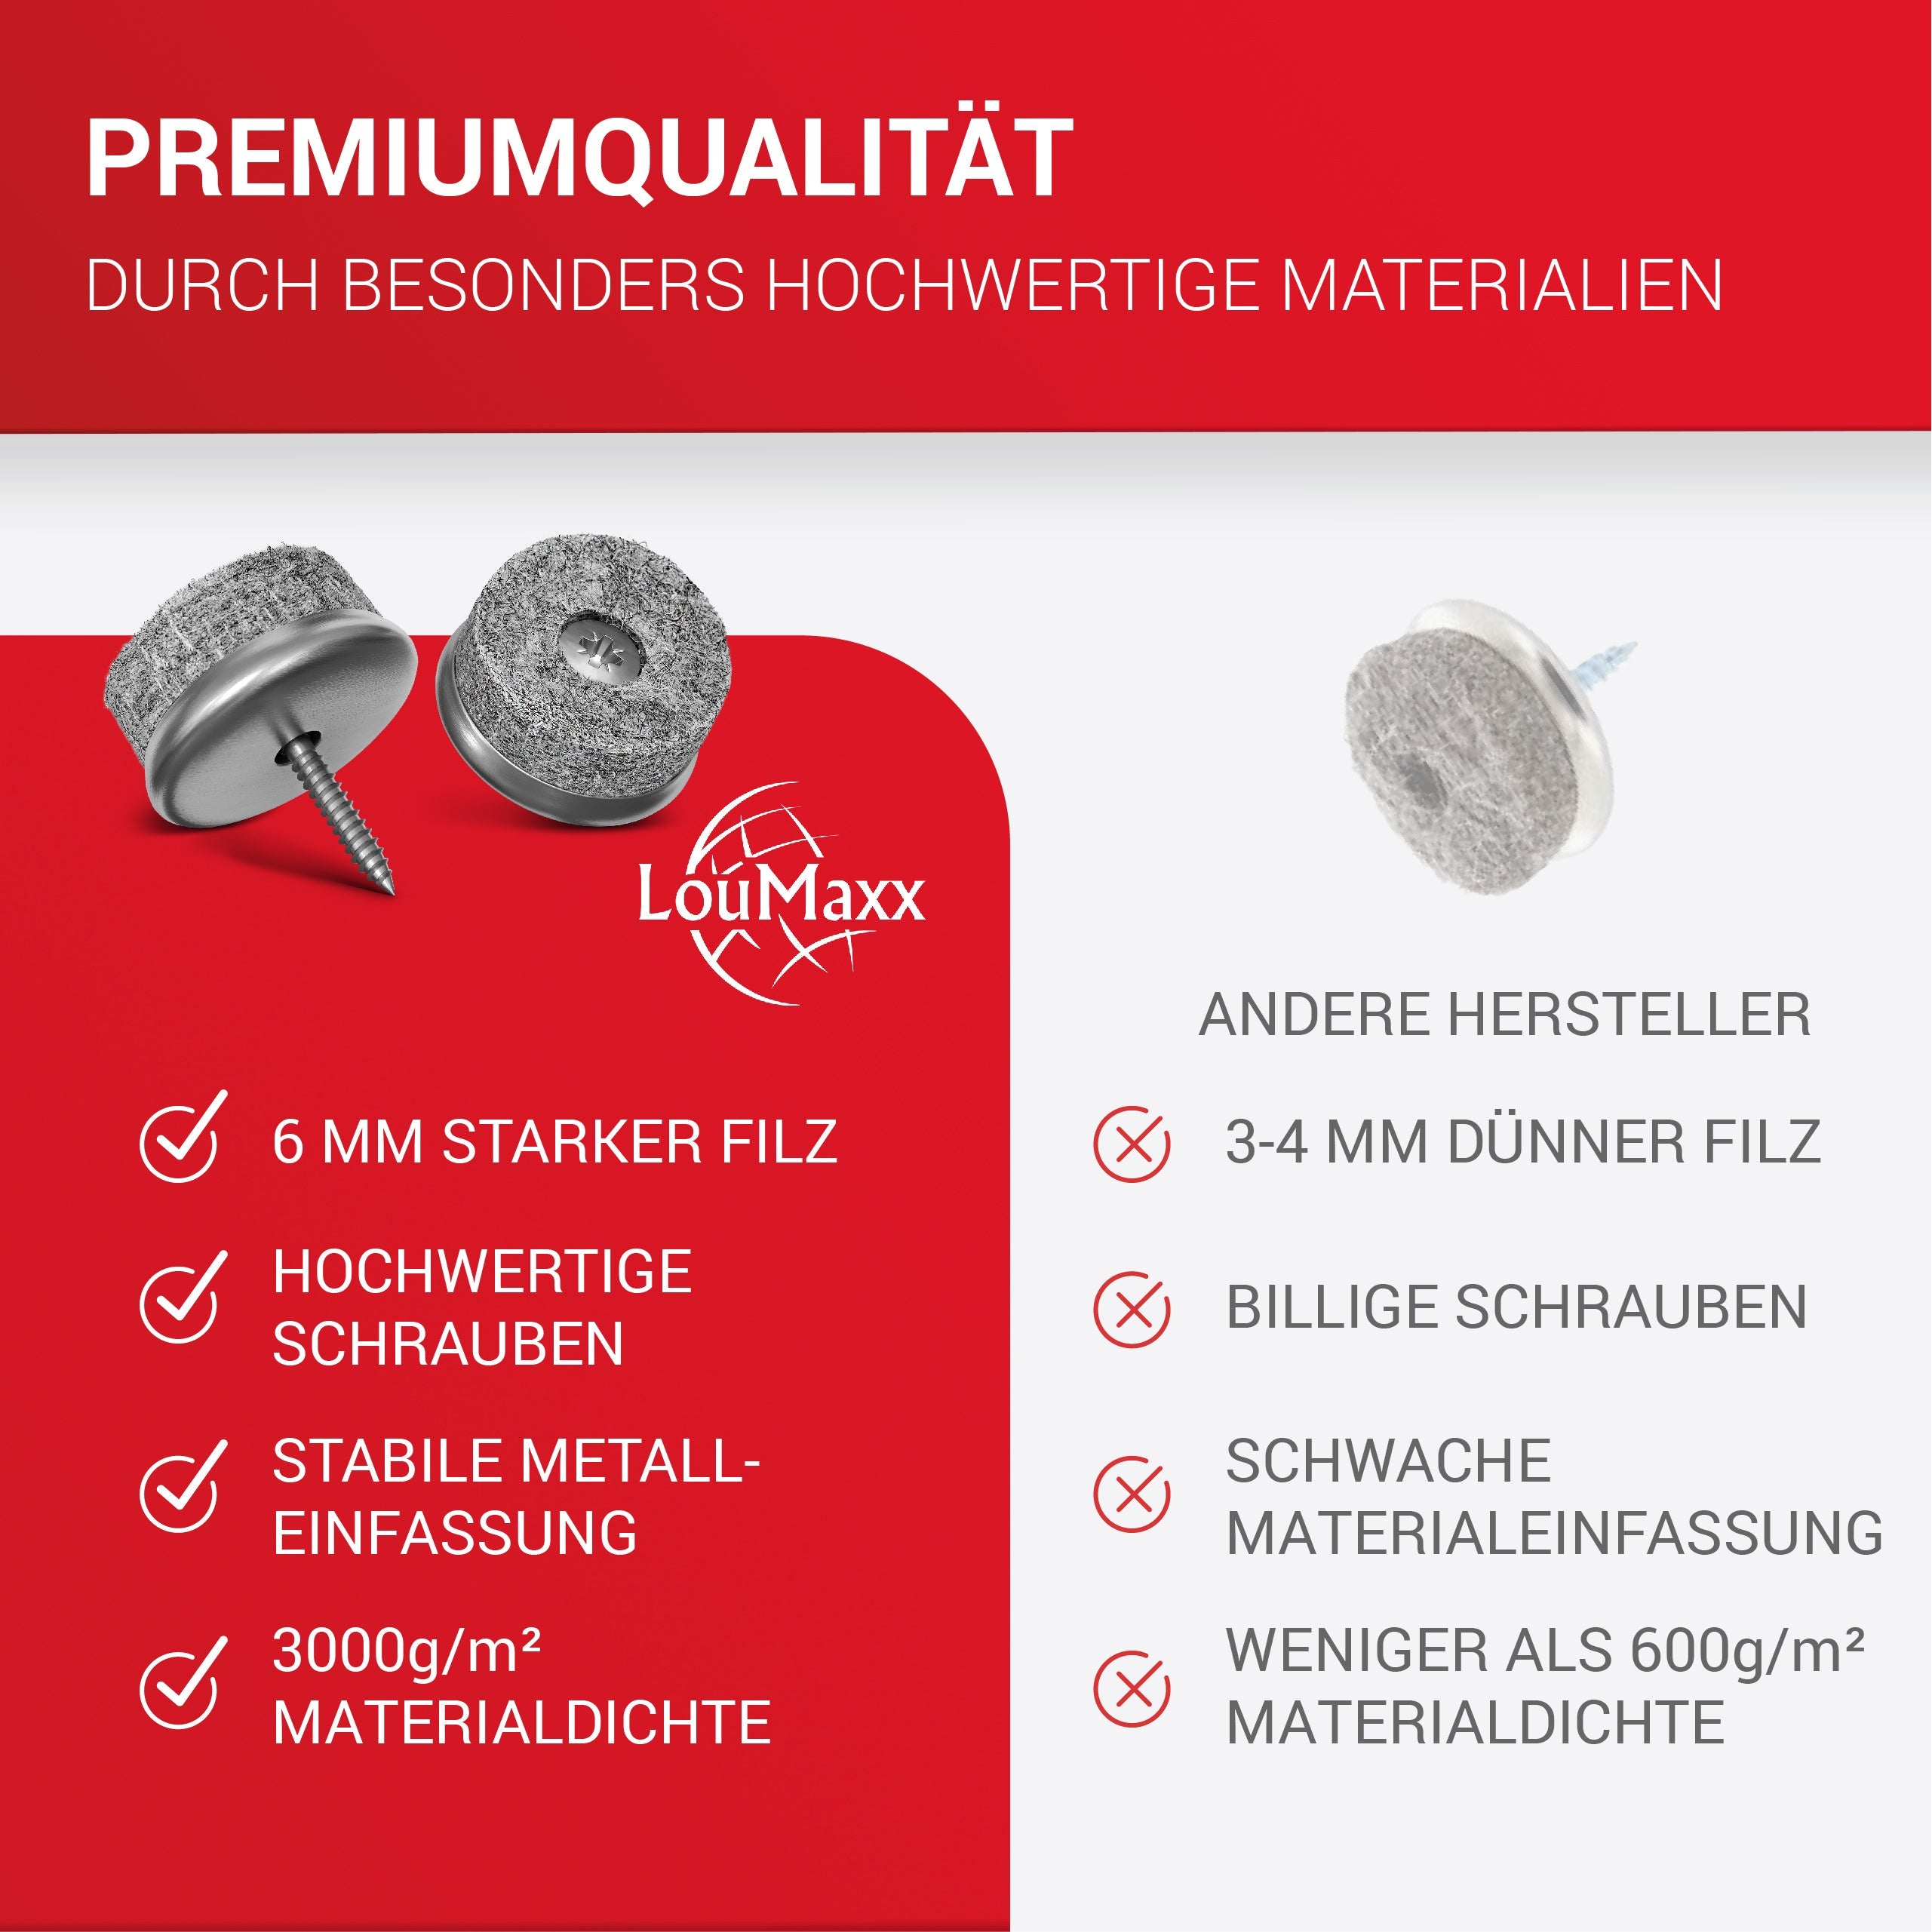 LouMaxx Stuhl Filzgleiter Schrauben – 20er Set (rund, Ø 20mm) grau – Stuhlgleiter mit 6 mm dickem Filz – stabile Metalleinfassung – Premium Schutz